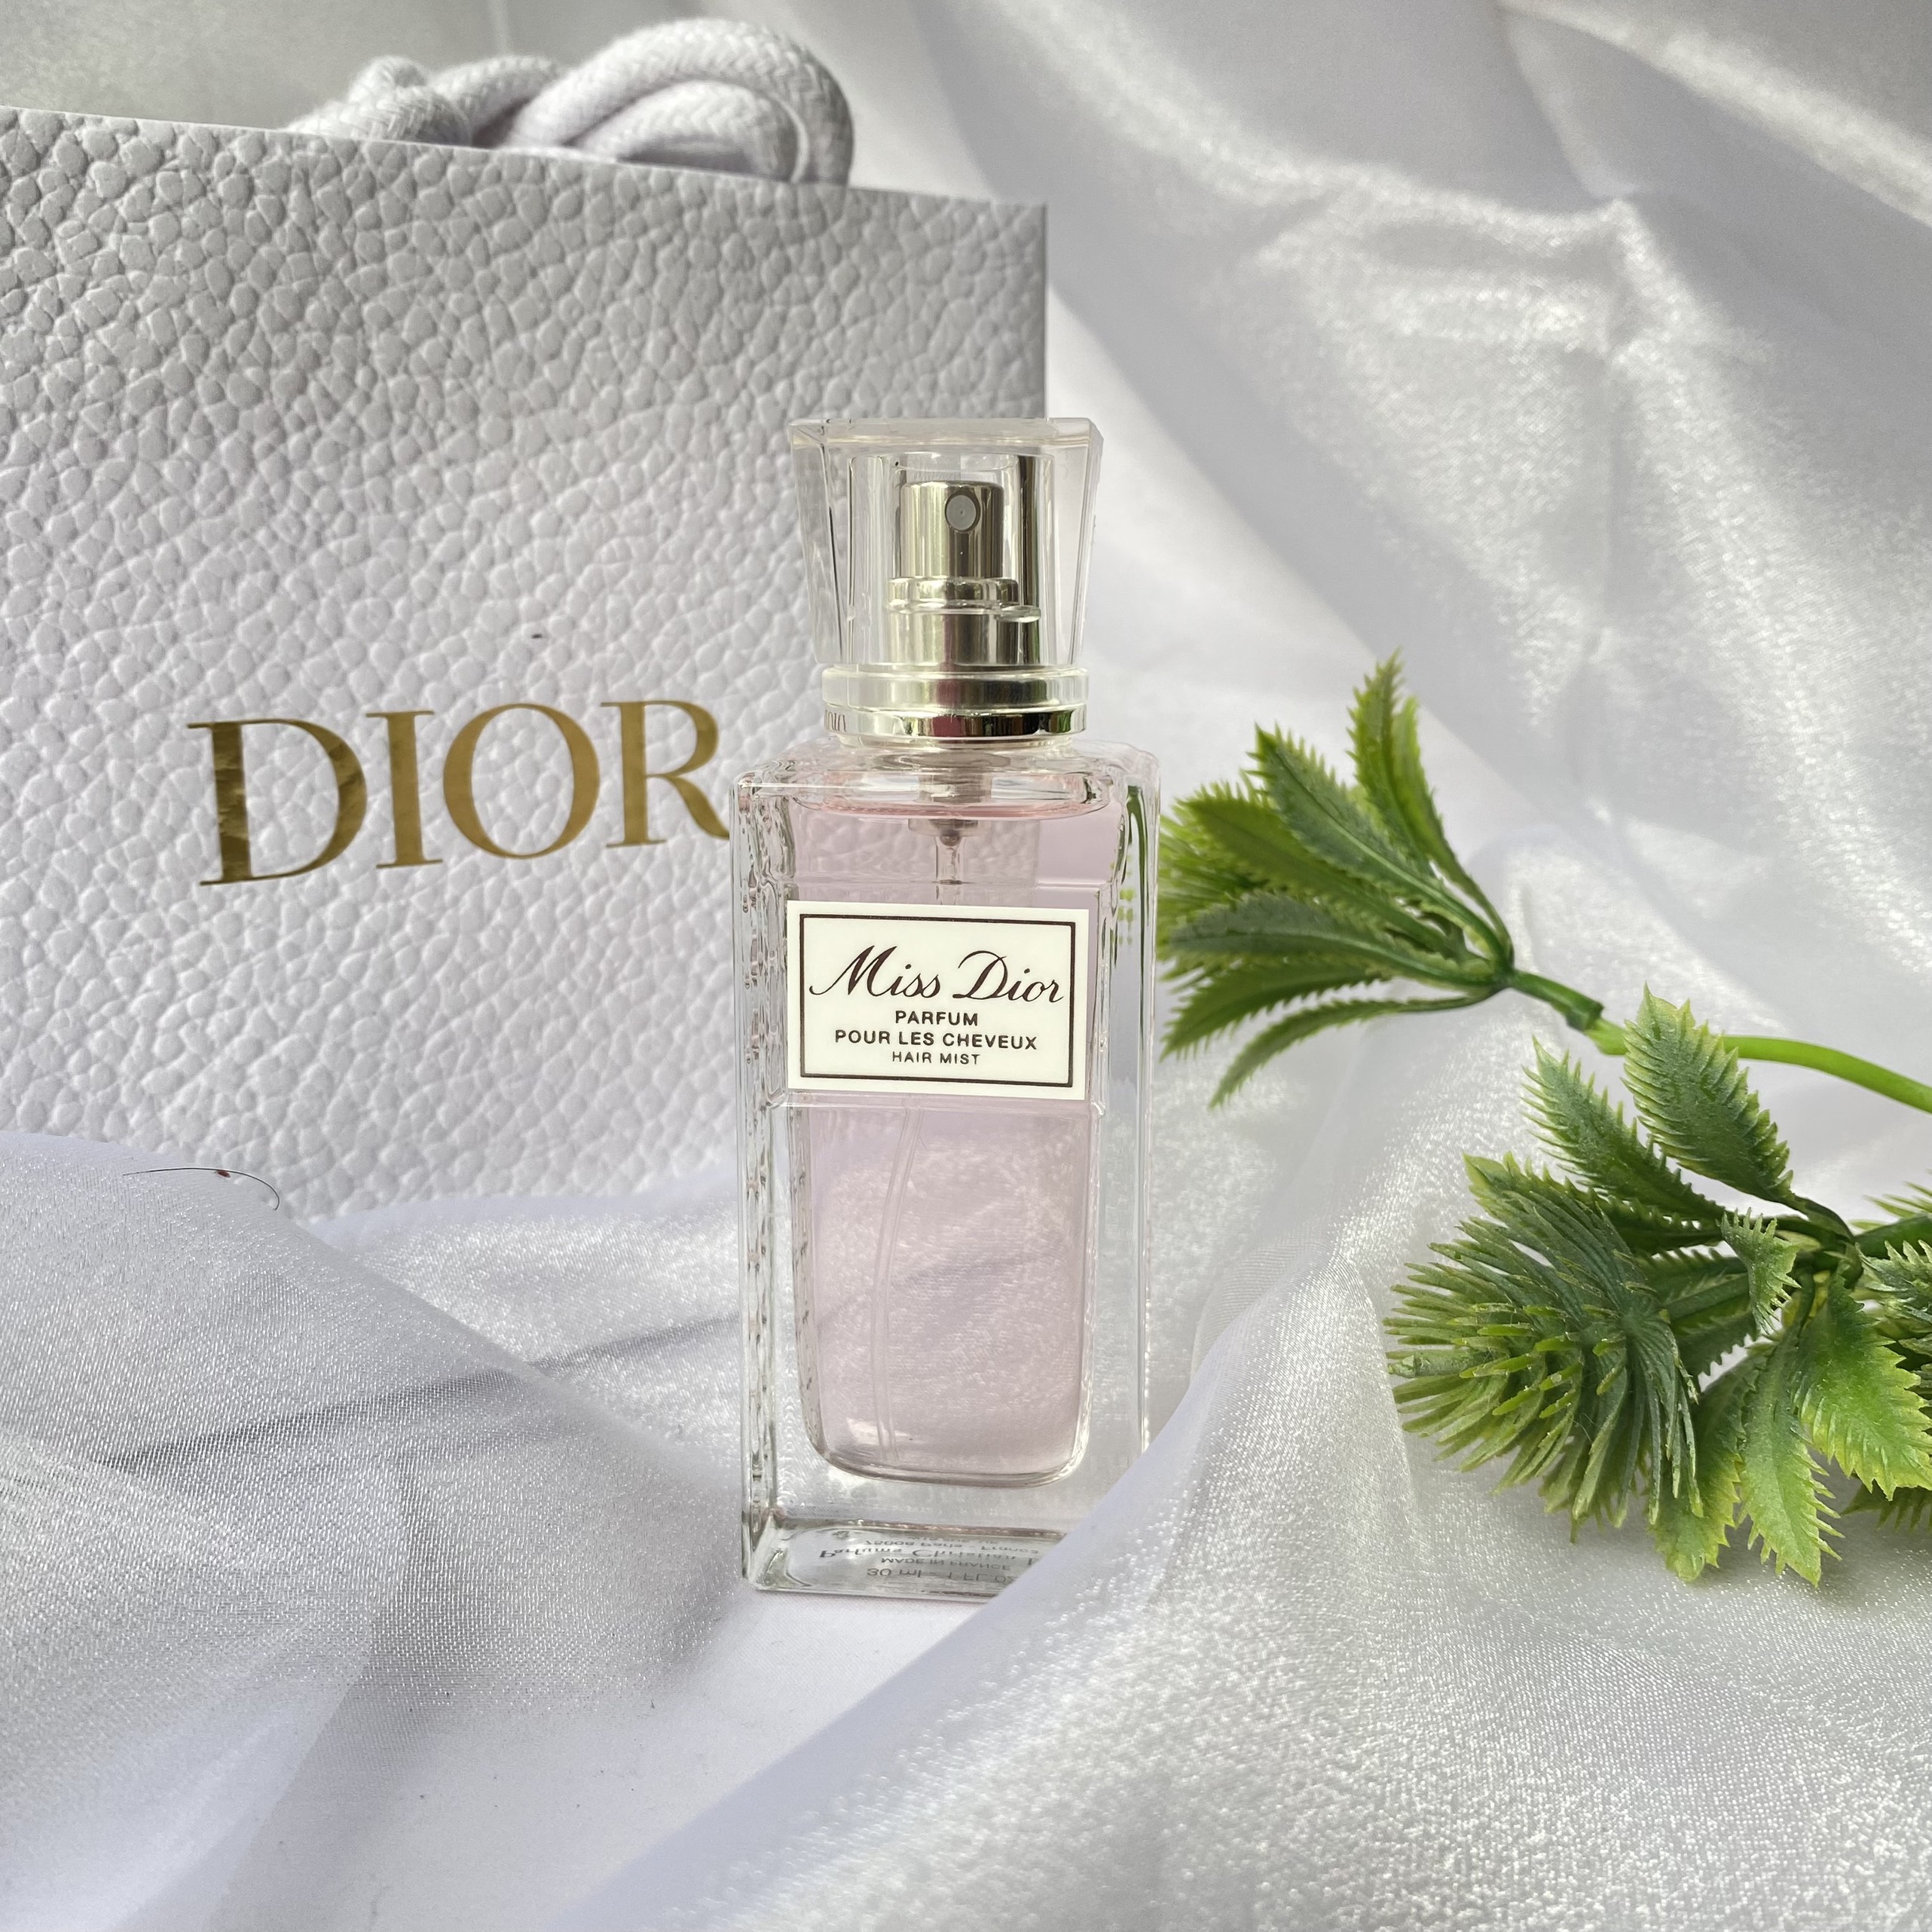 Nước Hoa Cho Tóc Miss Dior Perfum Hair Mist 30ml  Mỹ Phẩm Socutelipstick   Tiệm Socute